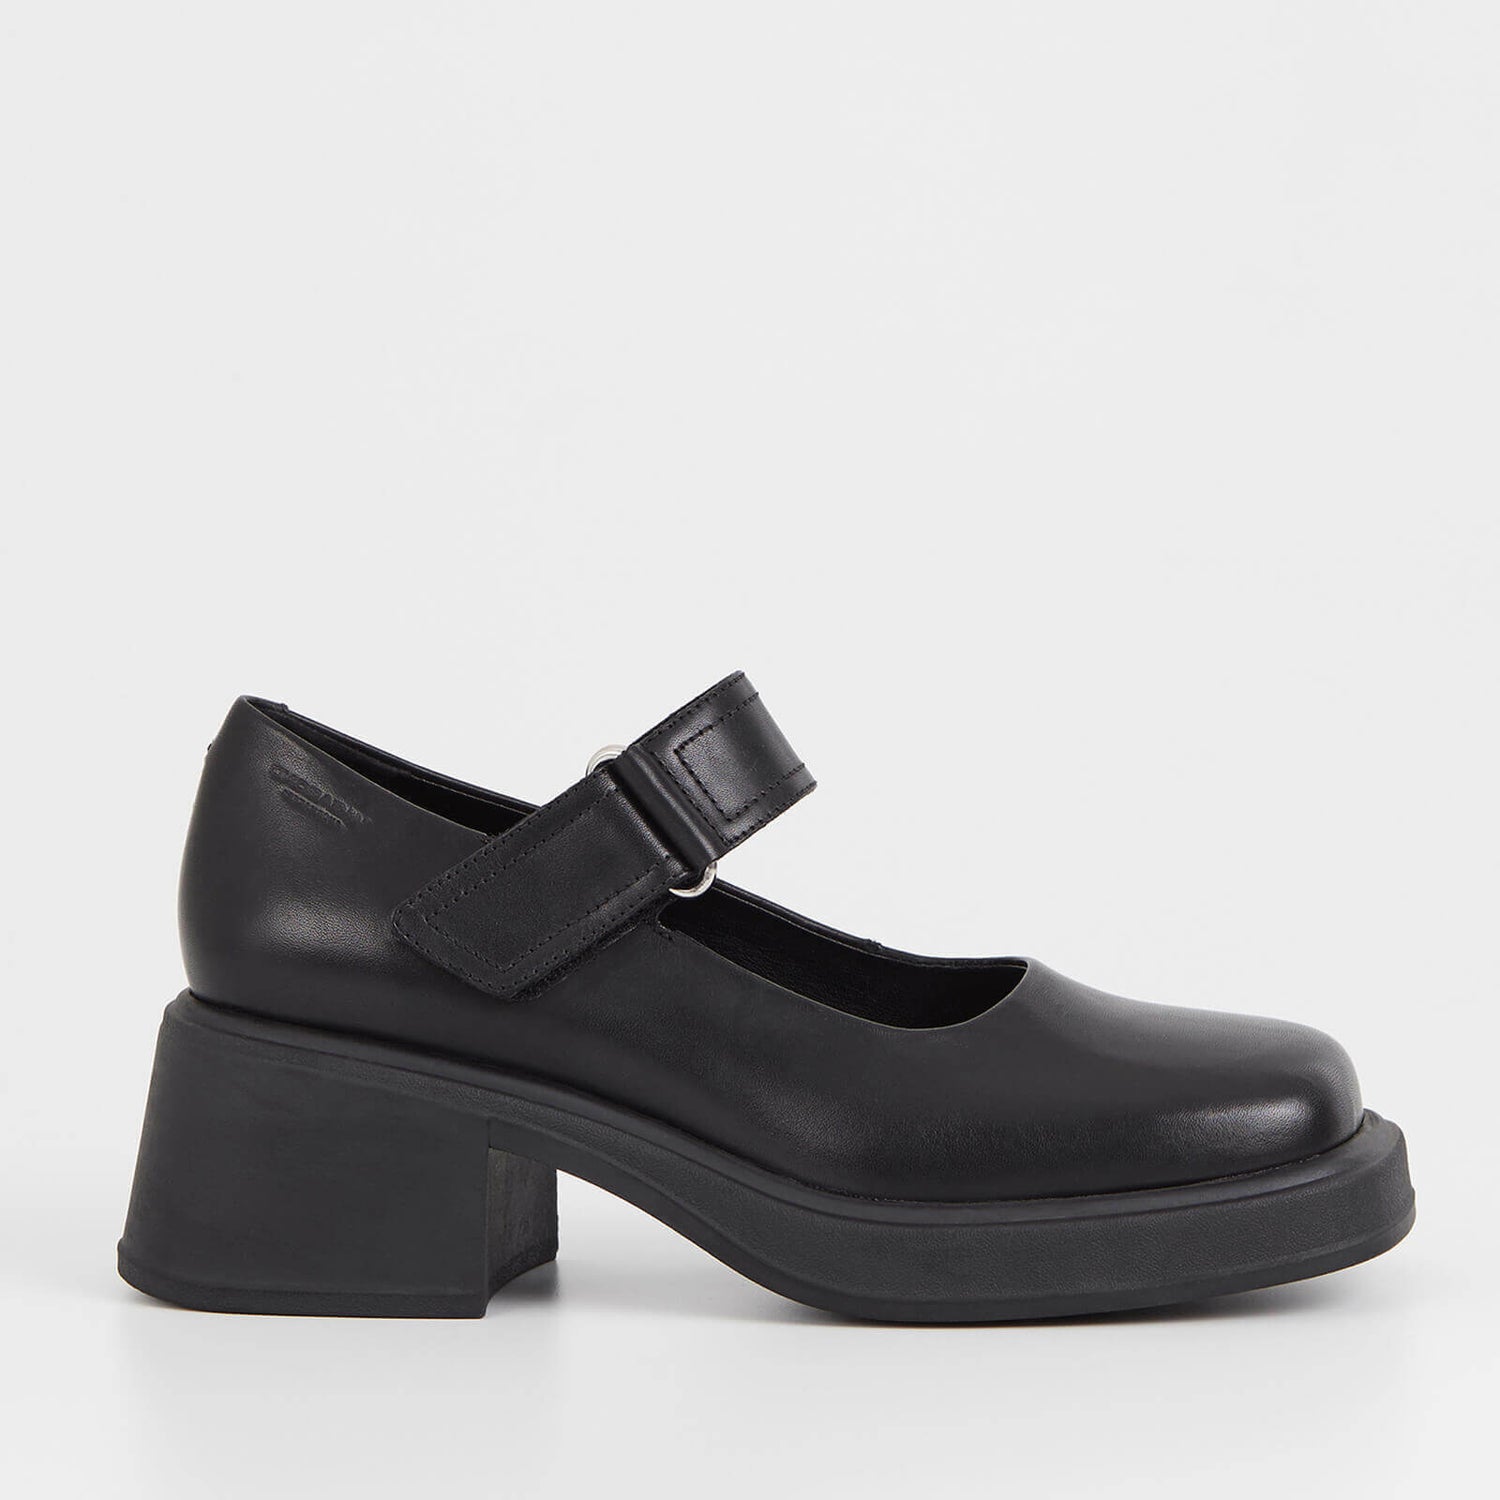 Vagabond Dorah Leather Heeled Mary Jane Shoes - UK 8